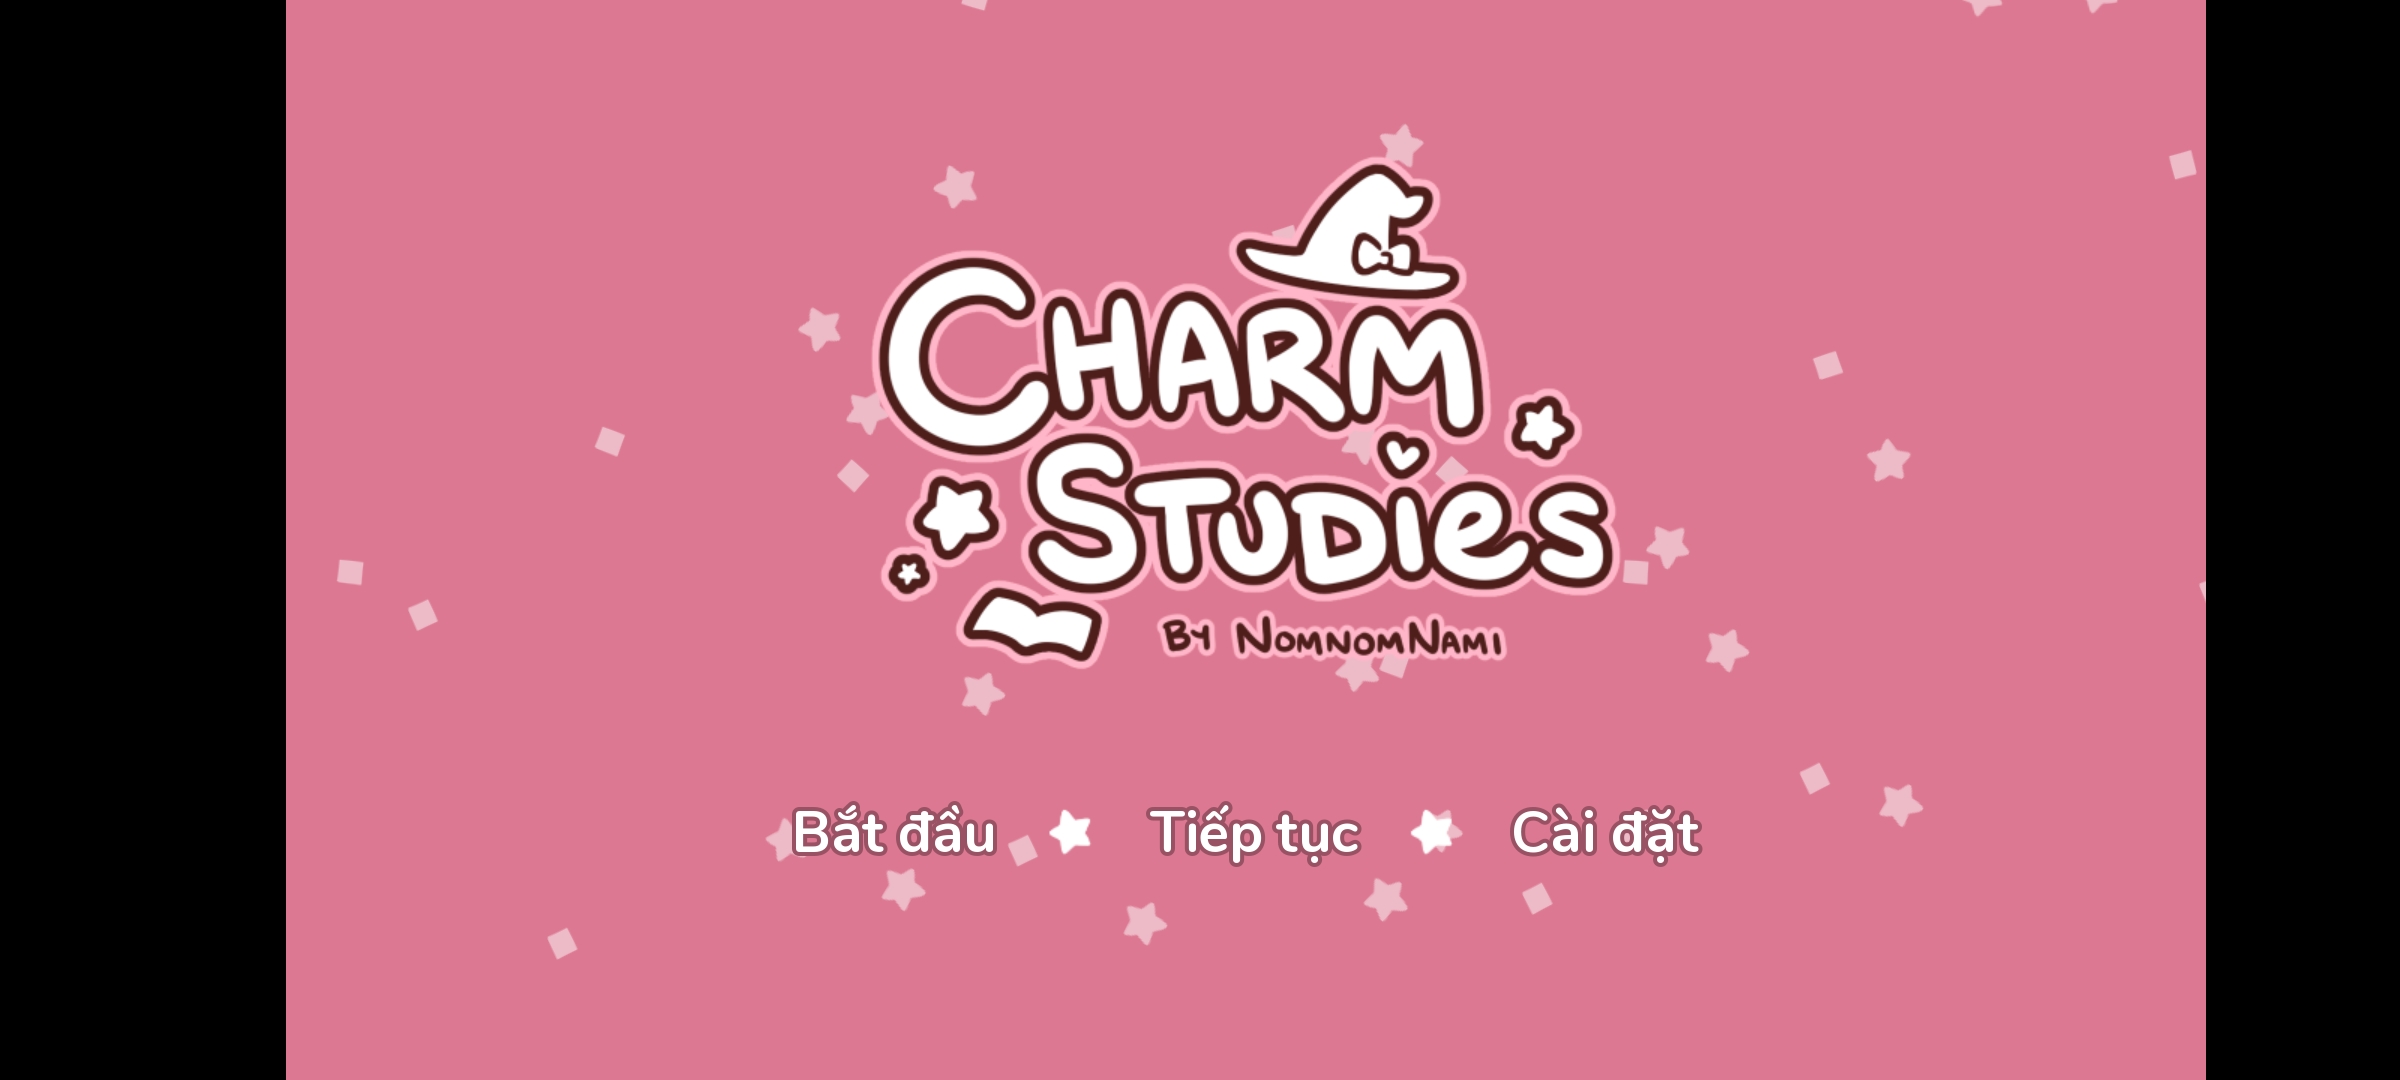 [Game Android] Charm Studies Tiếng Việt - Lớp Học Bùa Chú